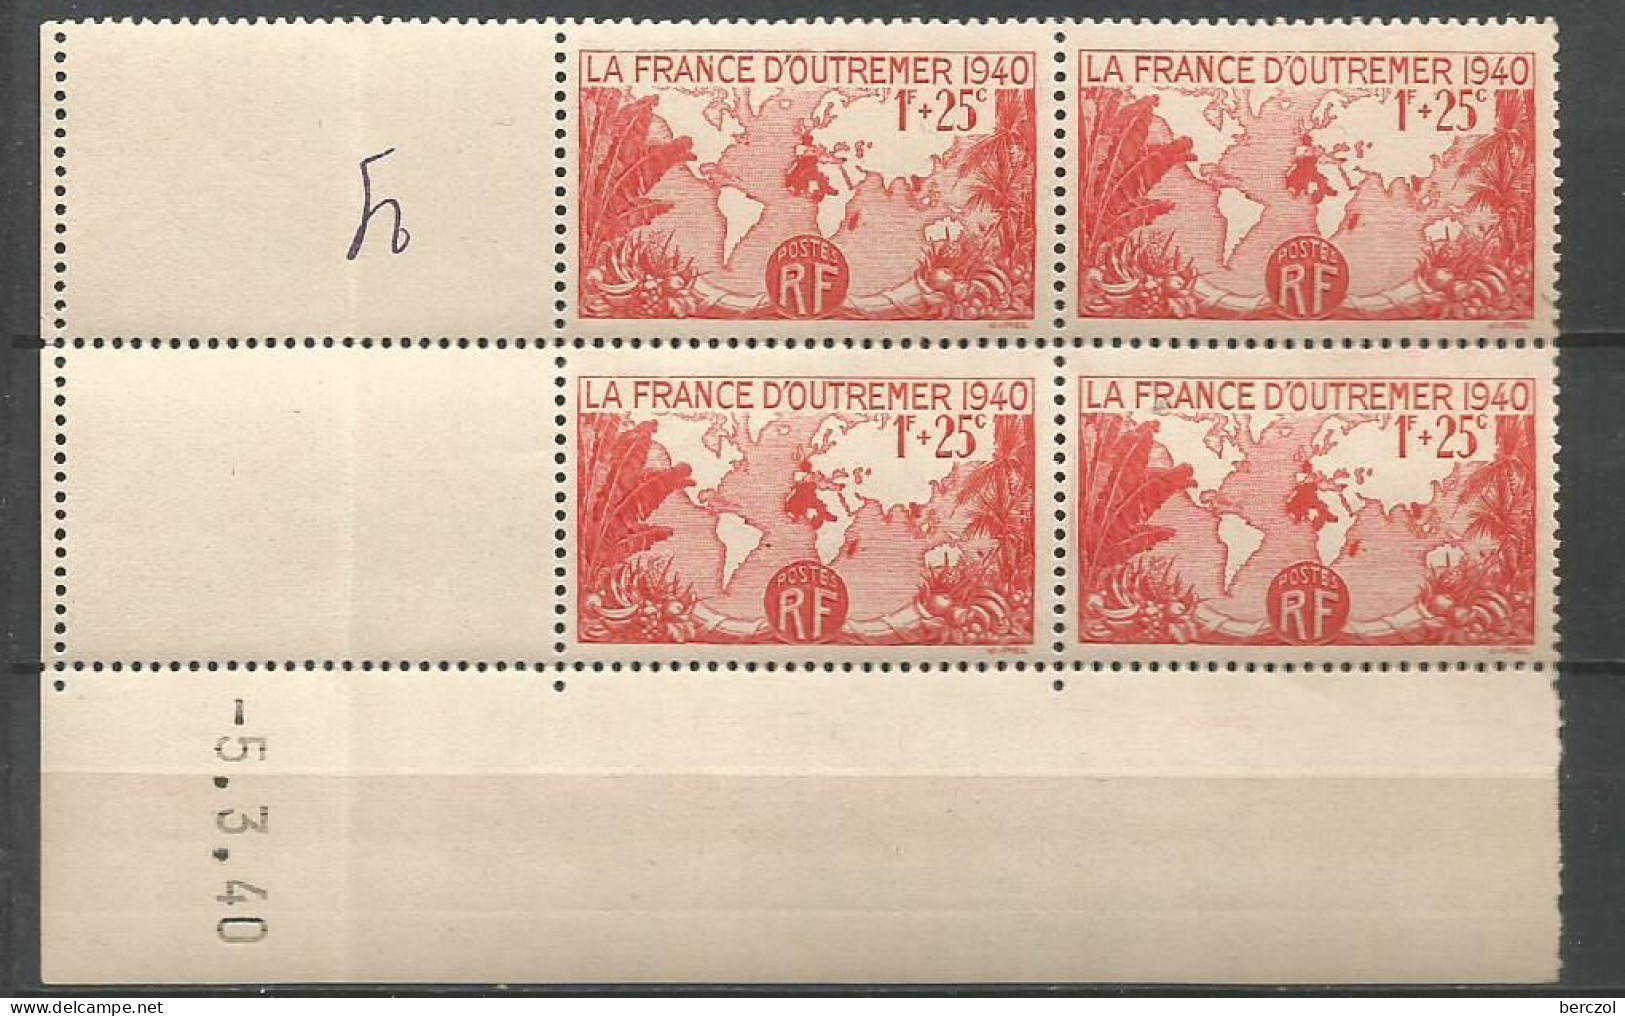 FRANCE ANNEE 1940 N°453 BLOC DE 4 EX COIN DATE 5/3/40 NEUF** MNH TB COTE 18,00 € - 1940-1949